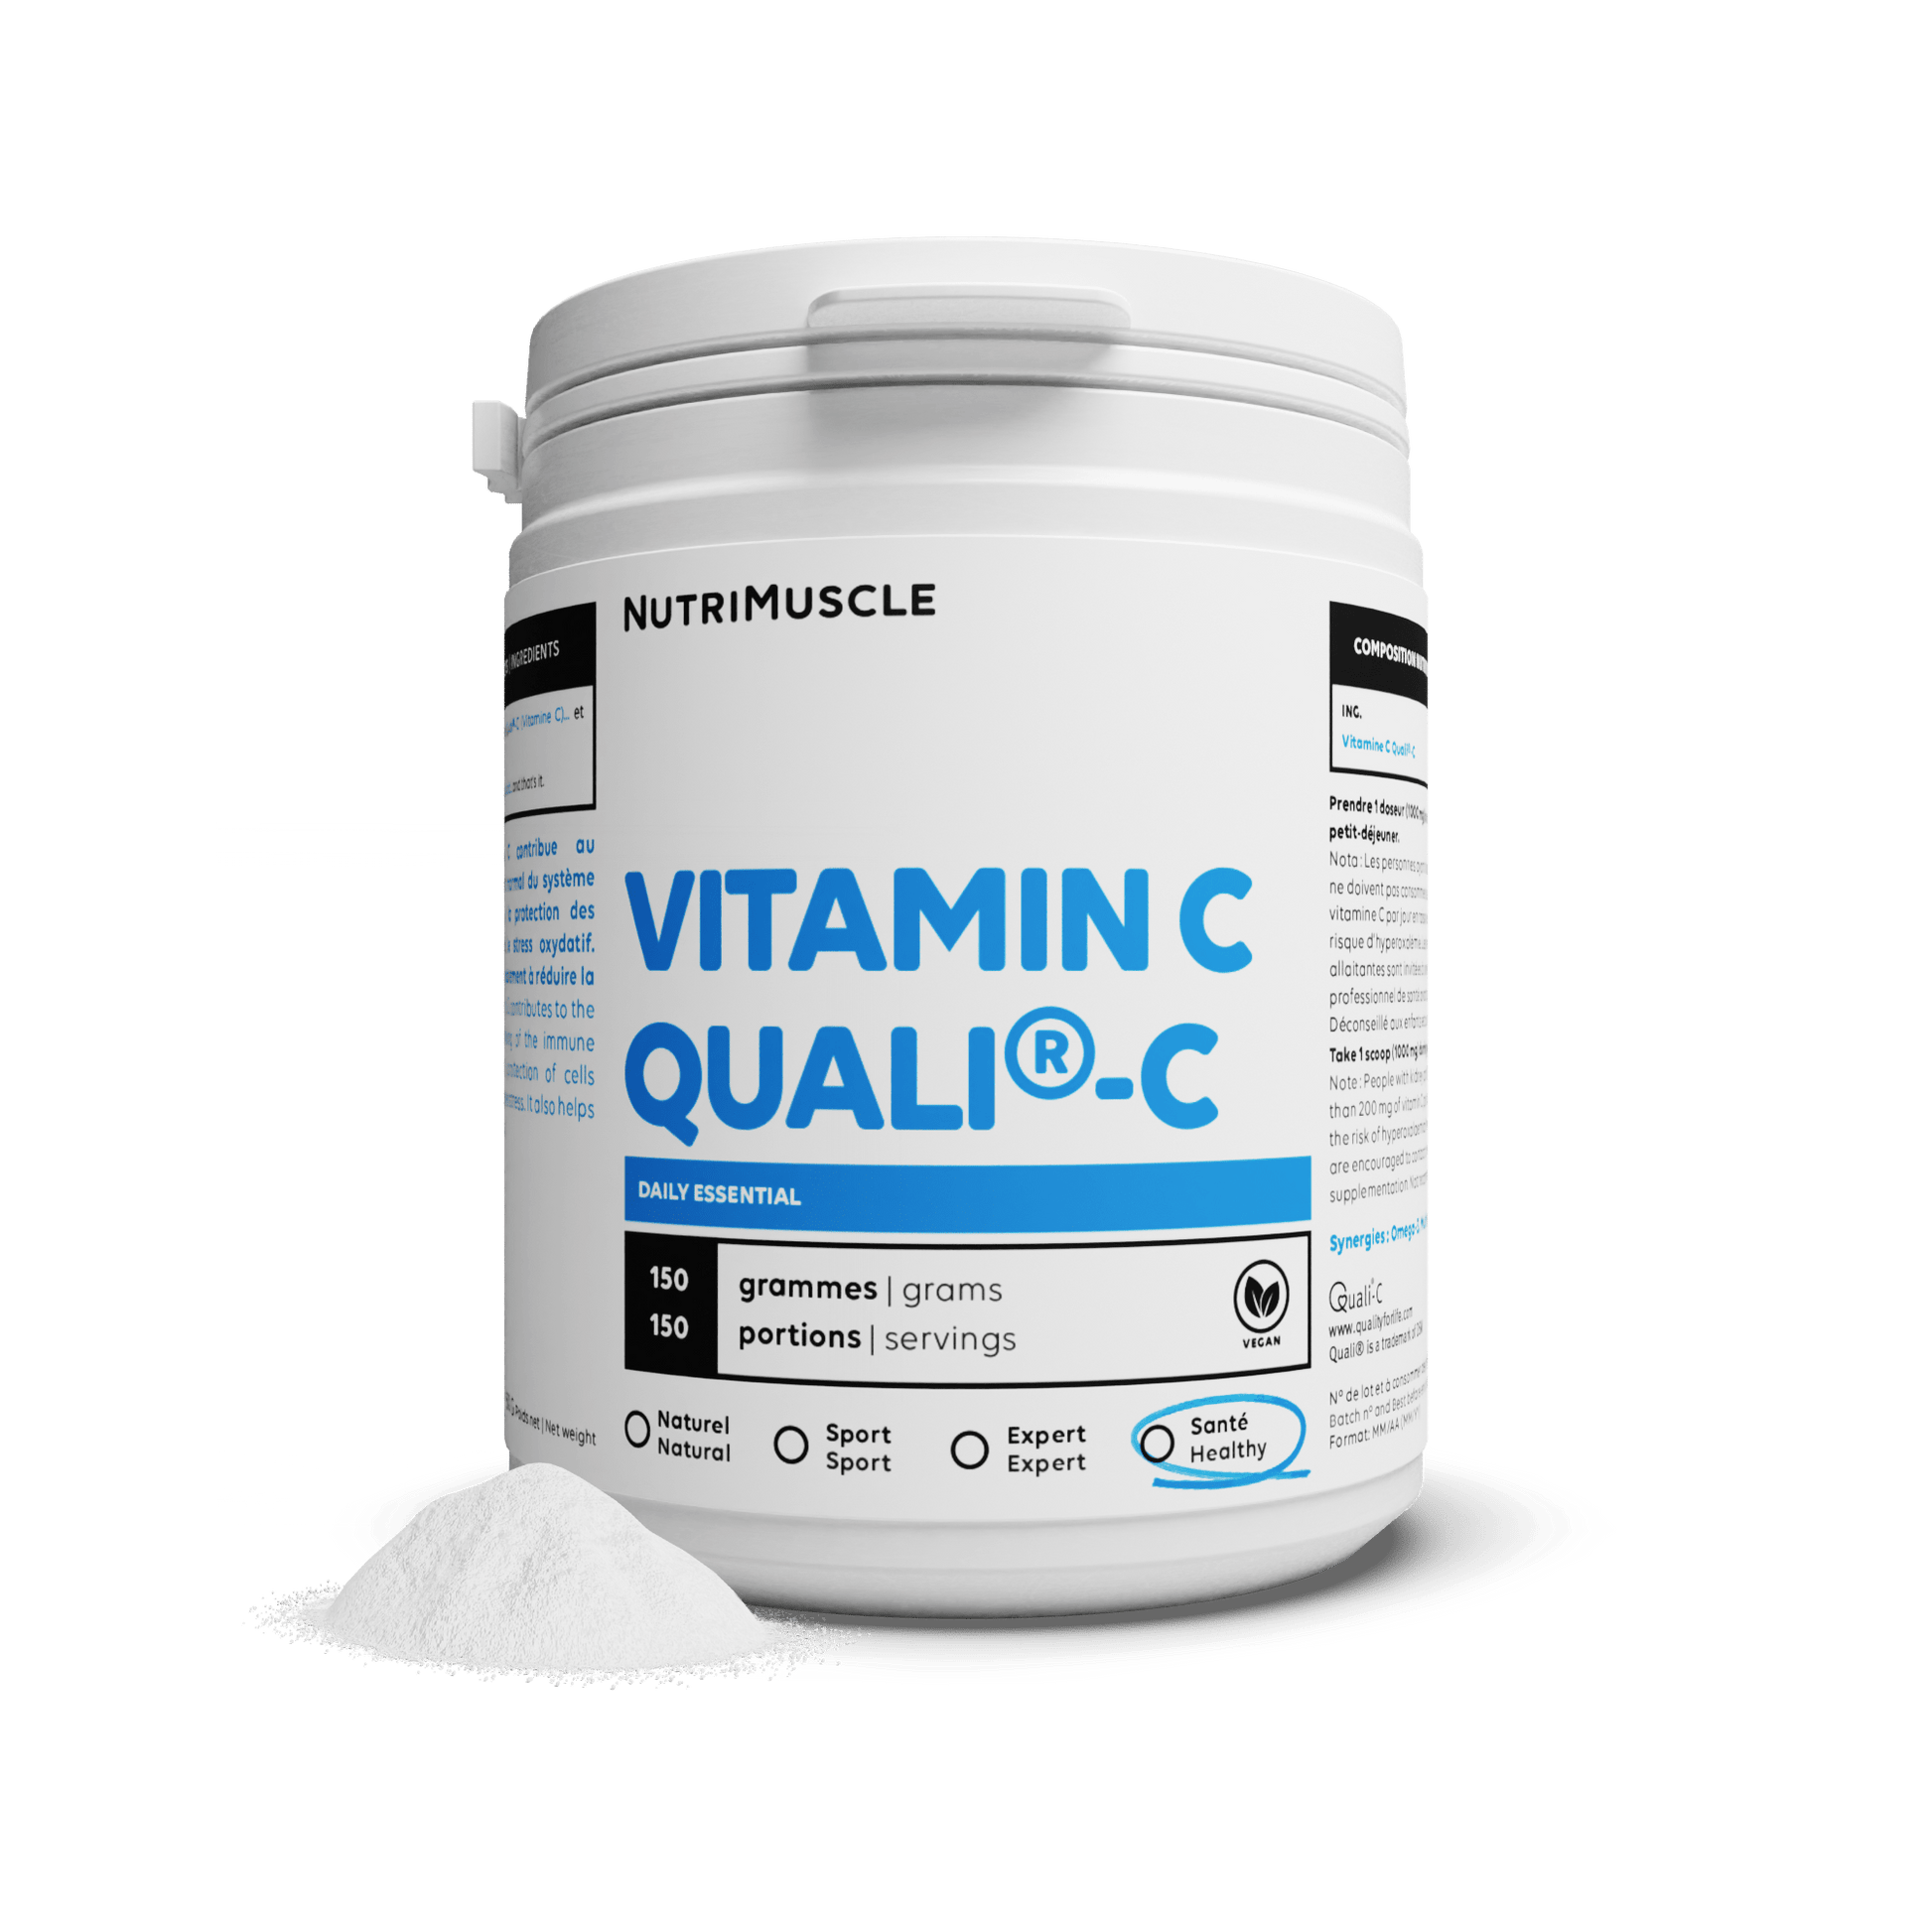 Nutrimuscle Vitamines 150 g Vitamine C Quali®C en poudre